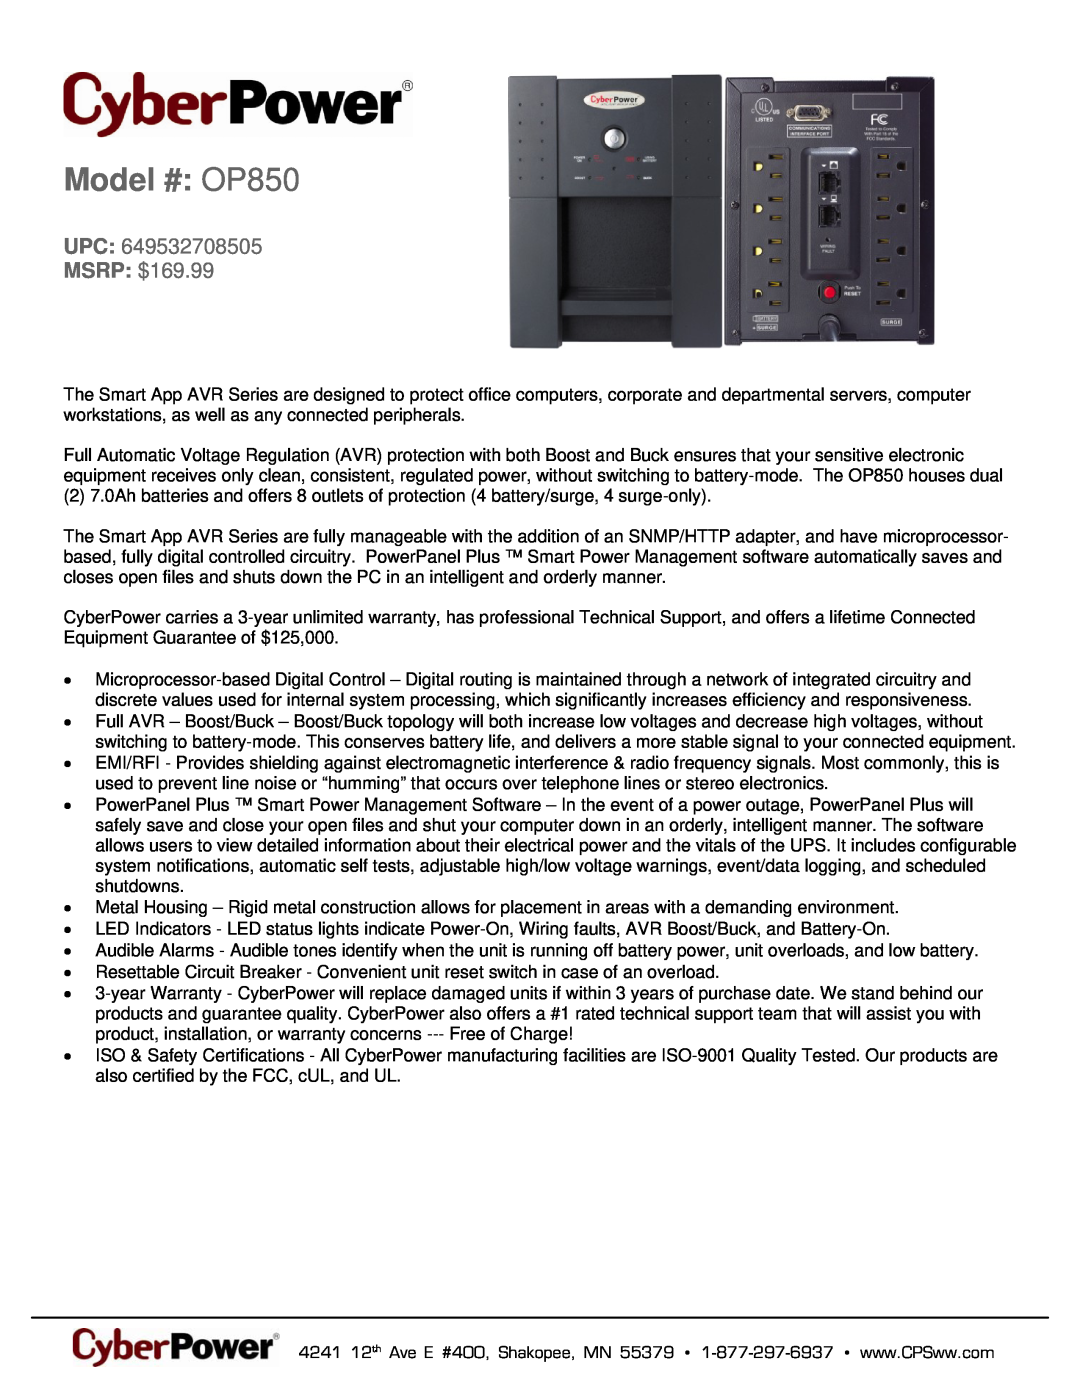 CyberPower Systems 649532708505 warranty Model # OP850, UPC MSRP $169.99 